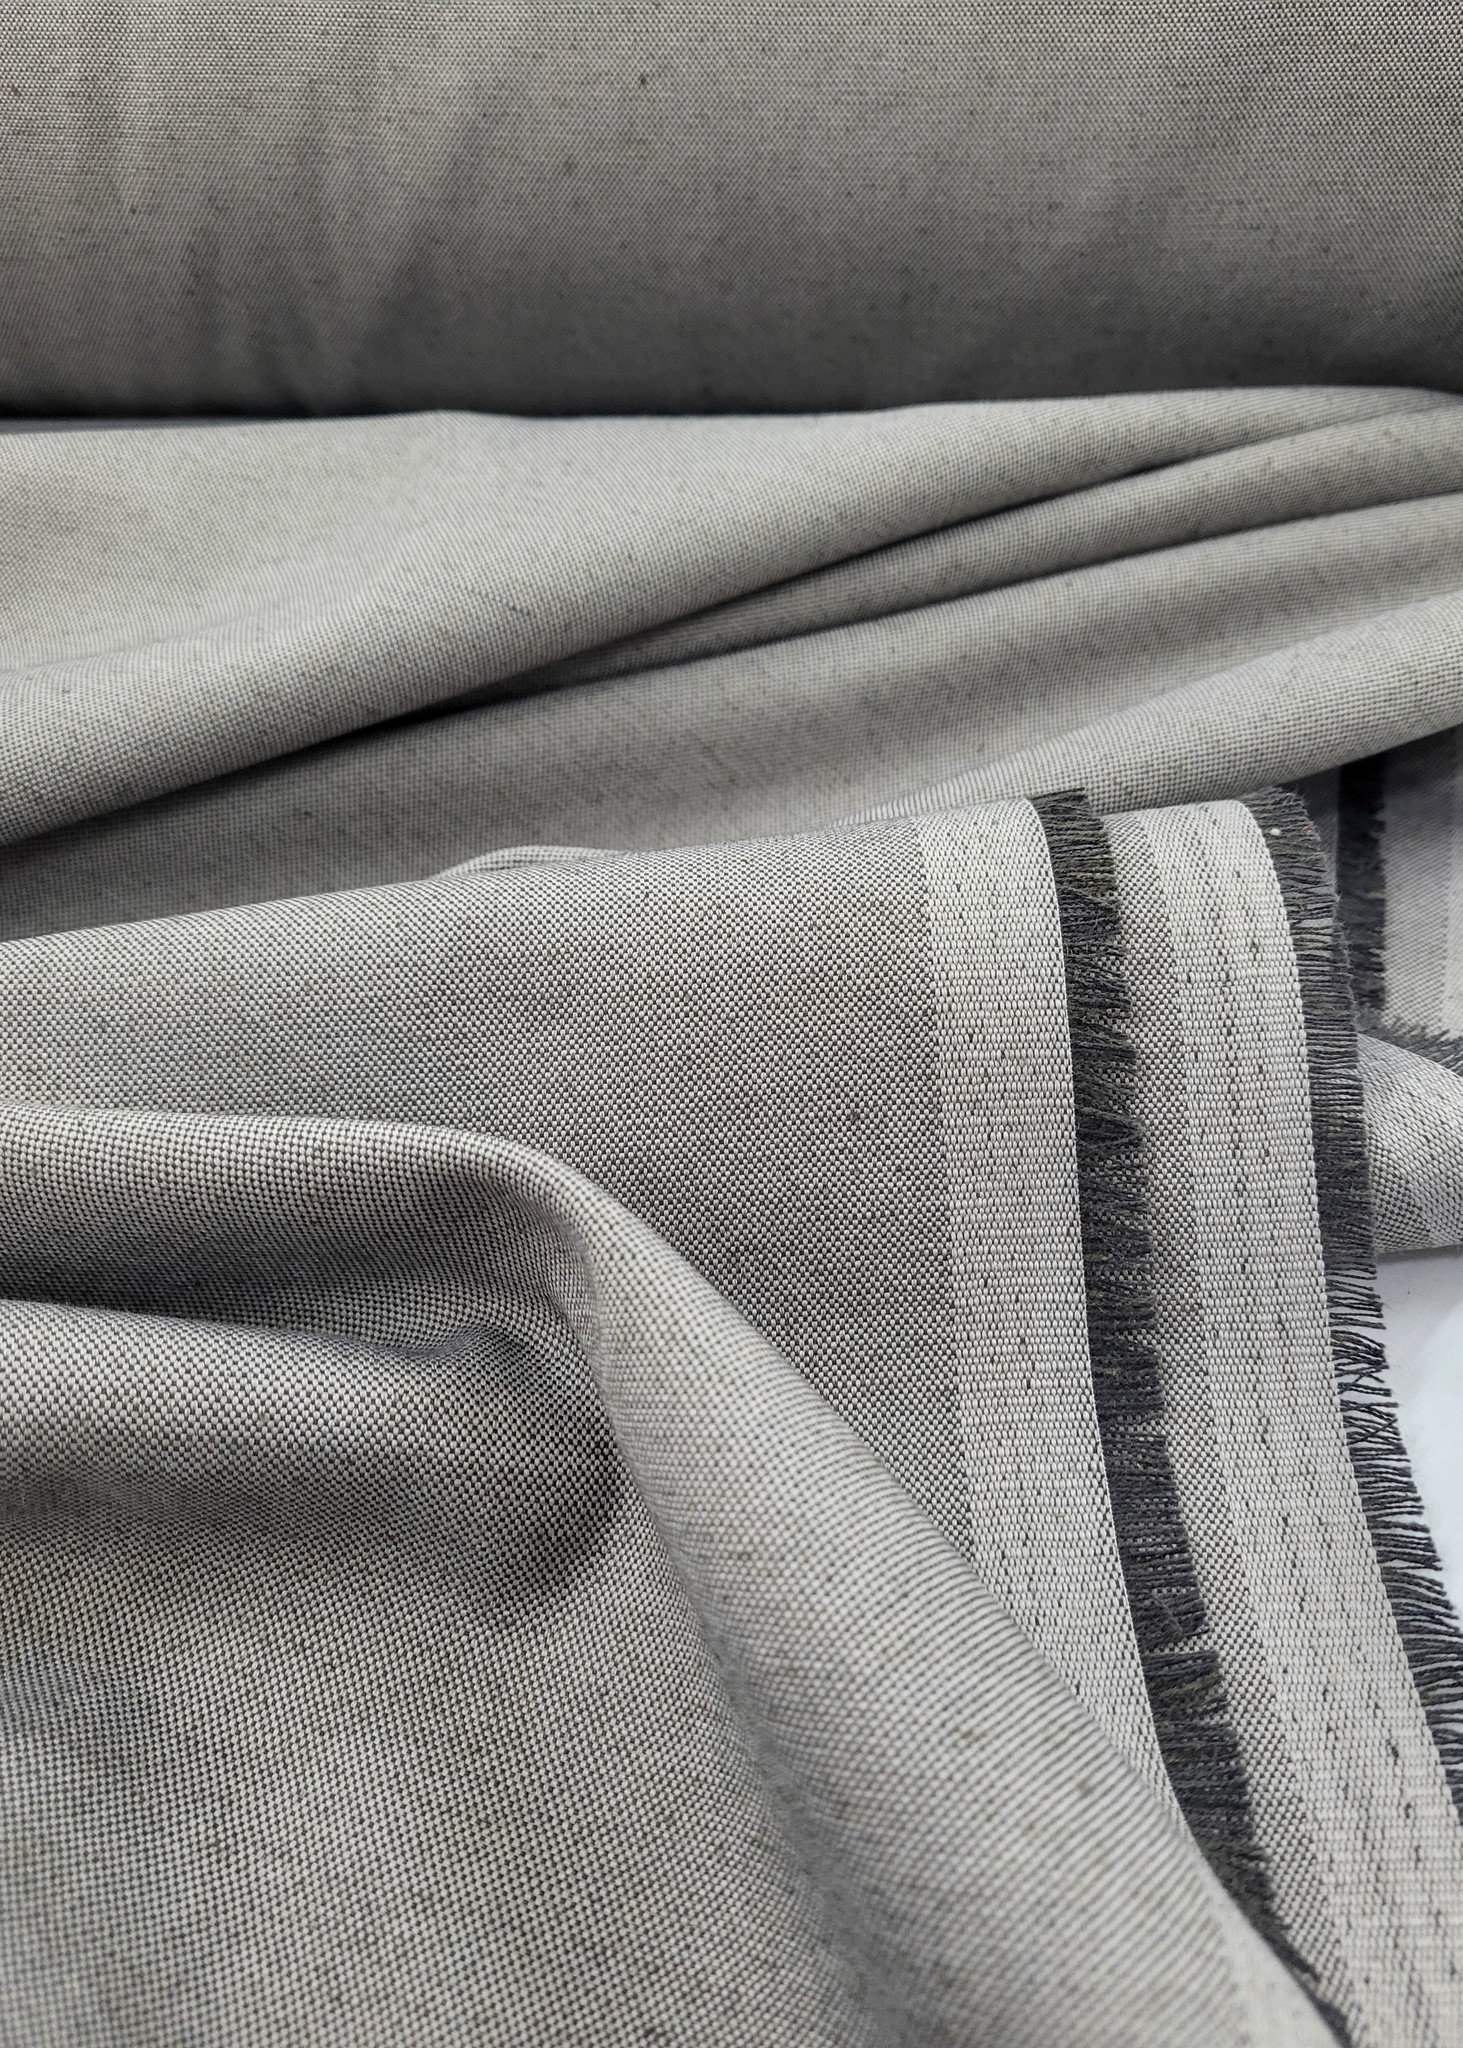 Verblinding Absoluut Roest Mooie grijze stof op 280 cm breedte - ideaal voor gordijnen of interieur -  Madeline de stoffenmadam